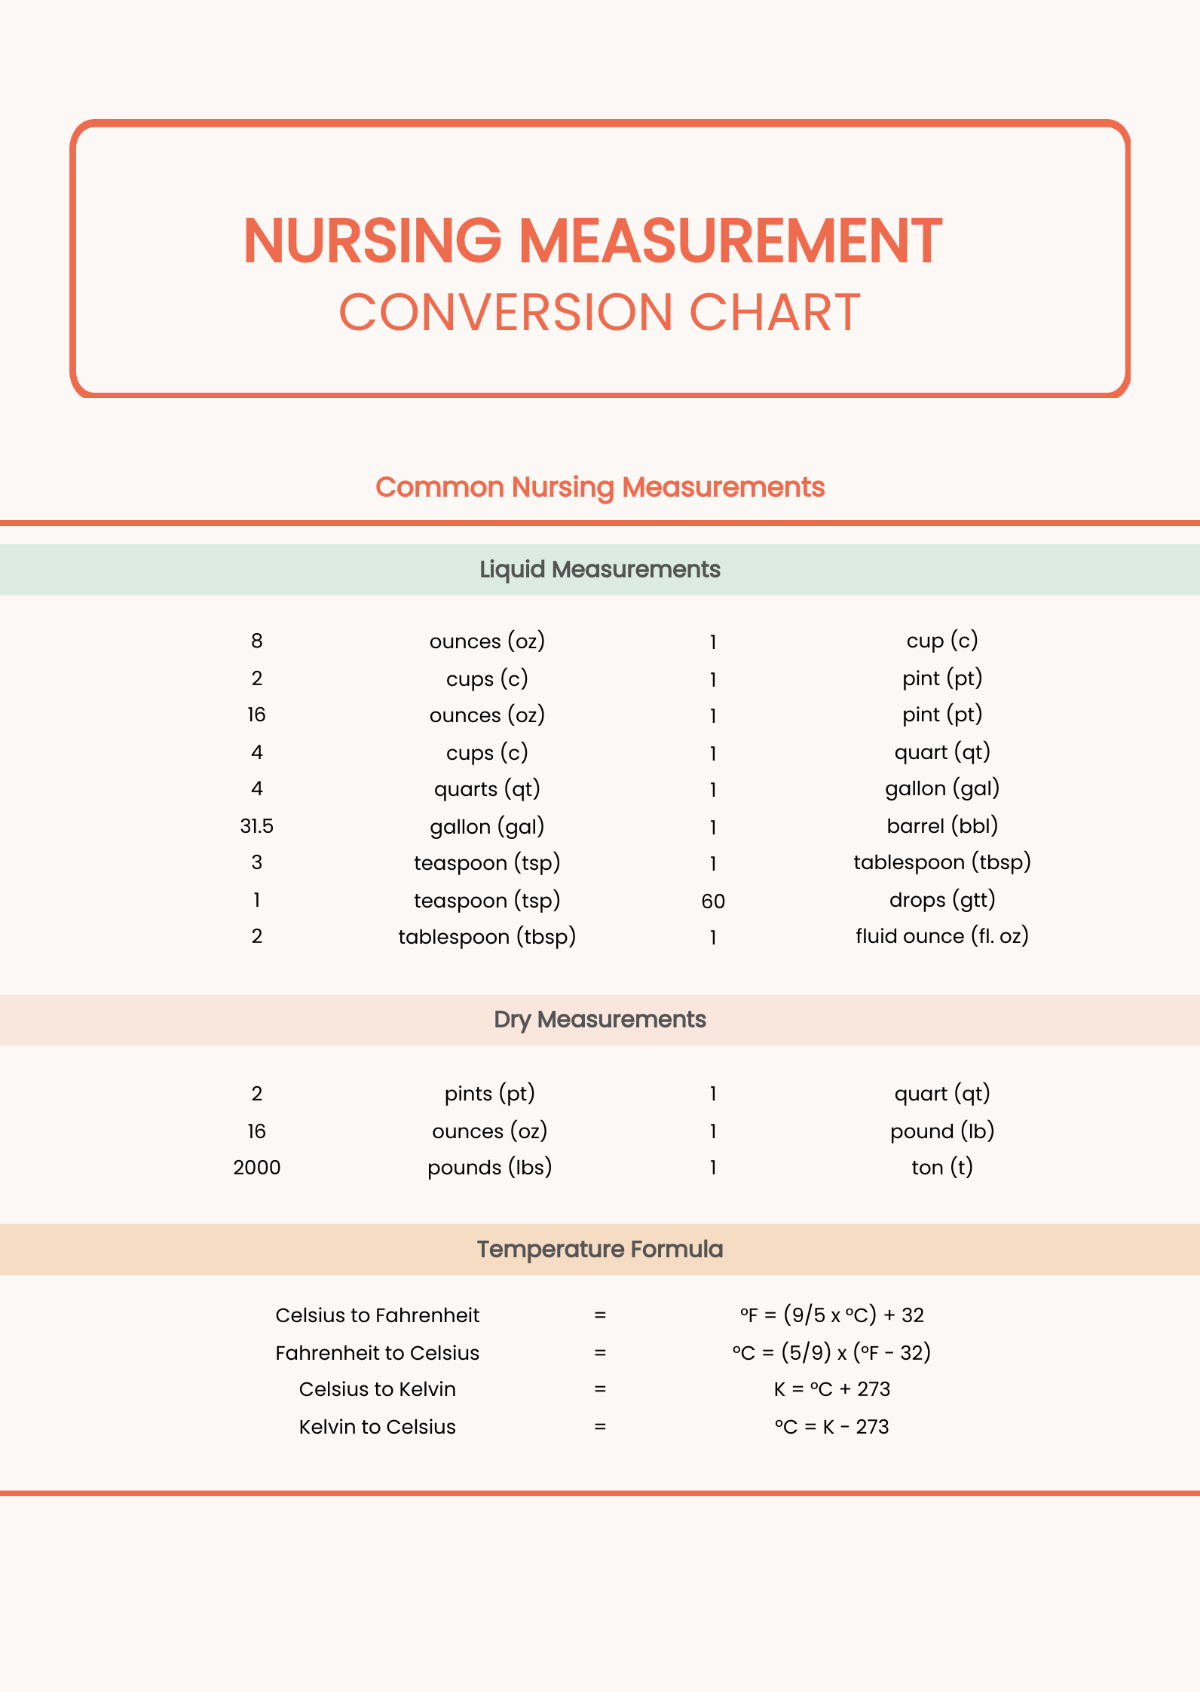 Nursing Measurement Conversion Chart Template